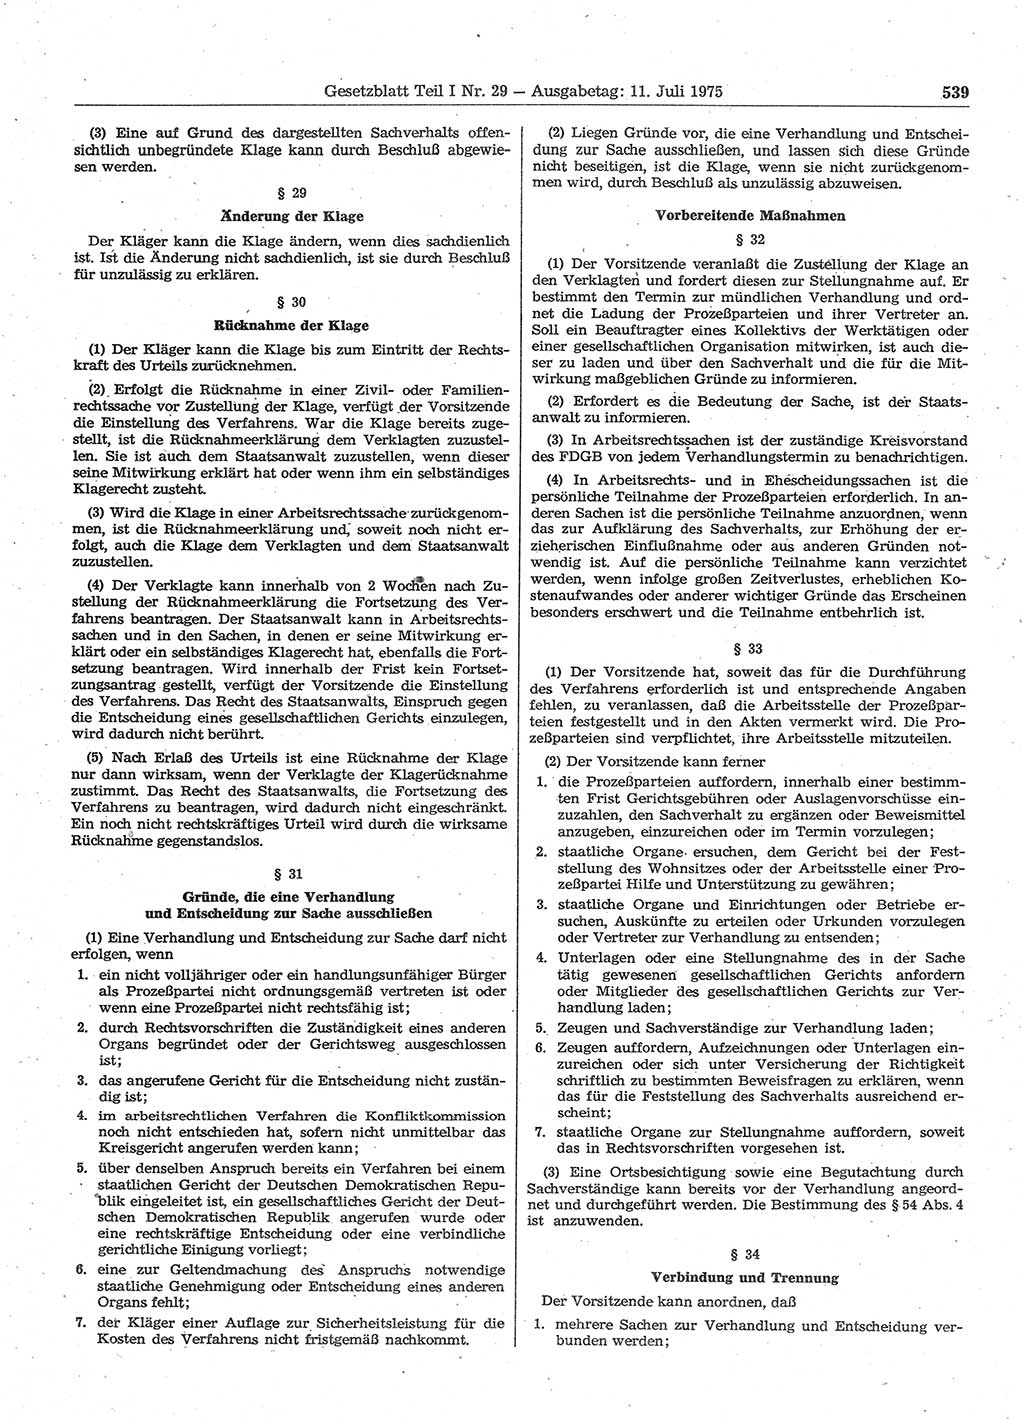 Gesetzblatt (GBl.) der Deutschen Demokratischen Republik (DDR) Teil Ⅰ 1975, Seite 539 (GBl. DDR Ⅰ 1975, S. 539)